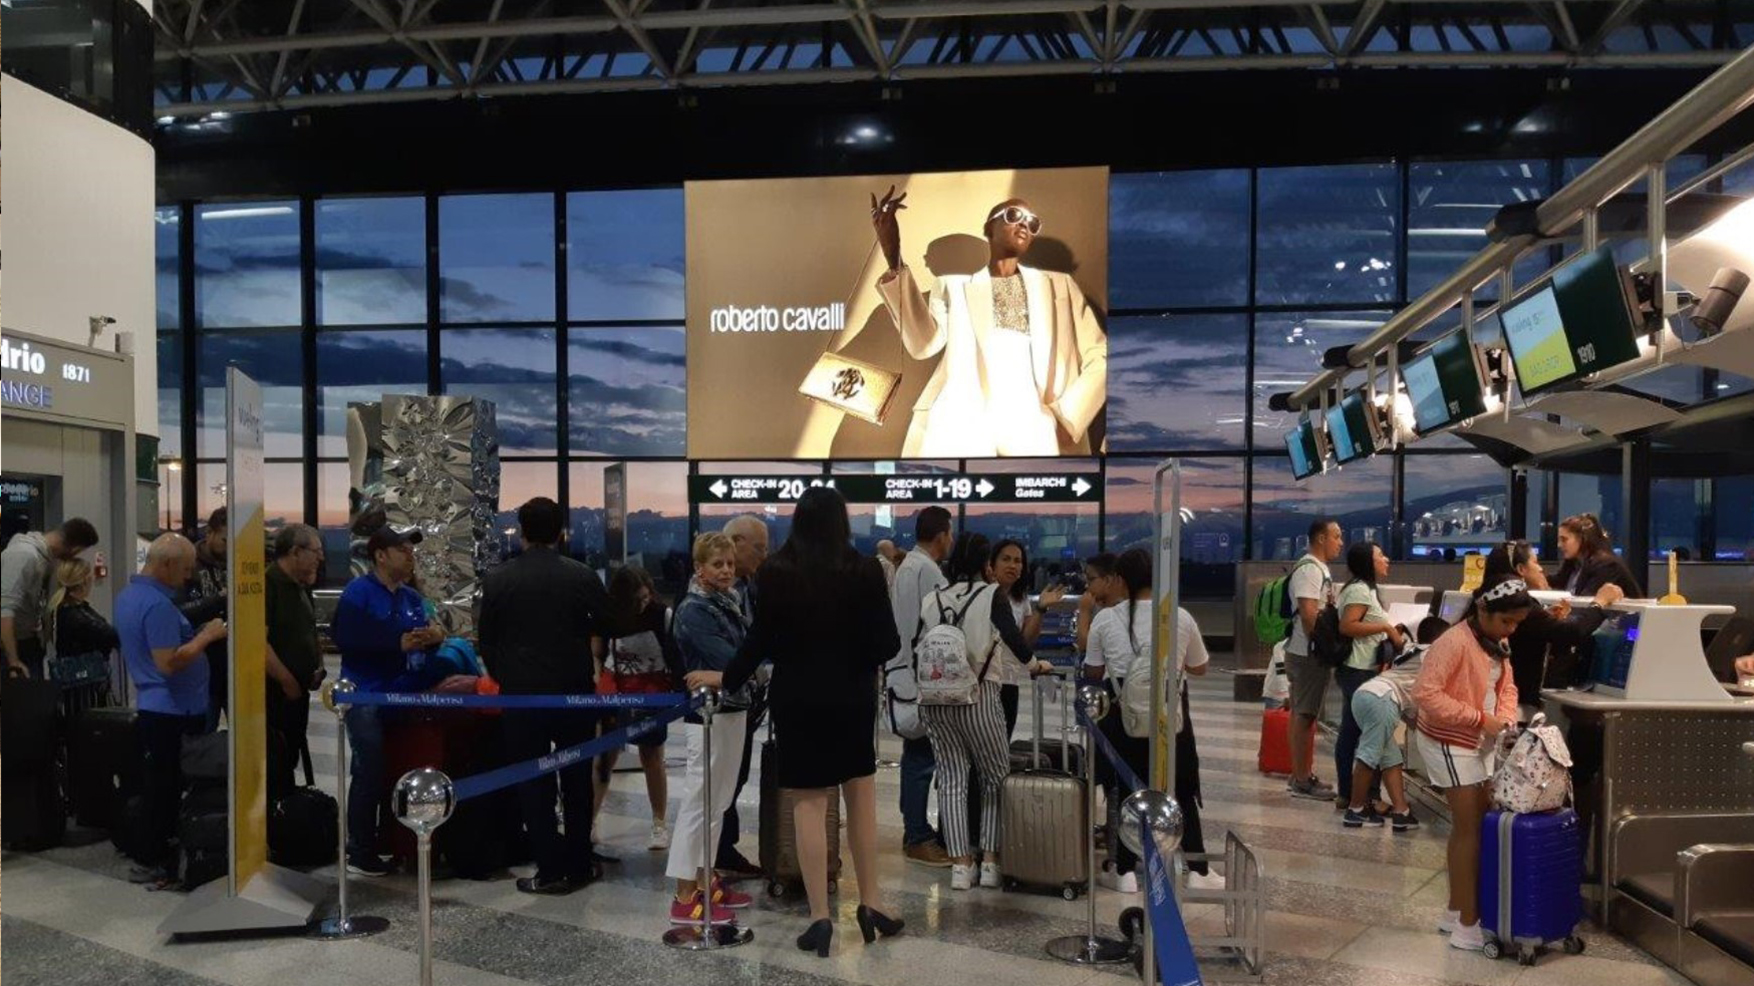 Impianto luminoso di grande impatto posizionato nella Hall Check in dell'Aeroporto di Milano Malpensa.